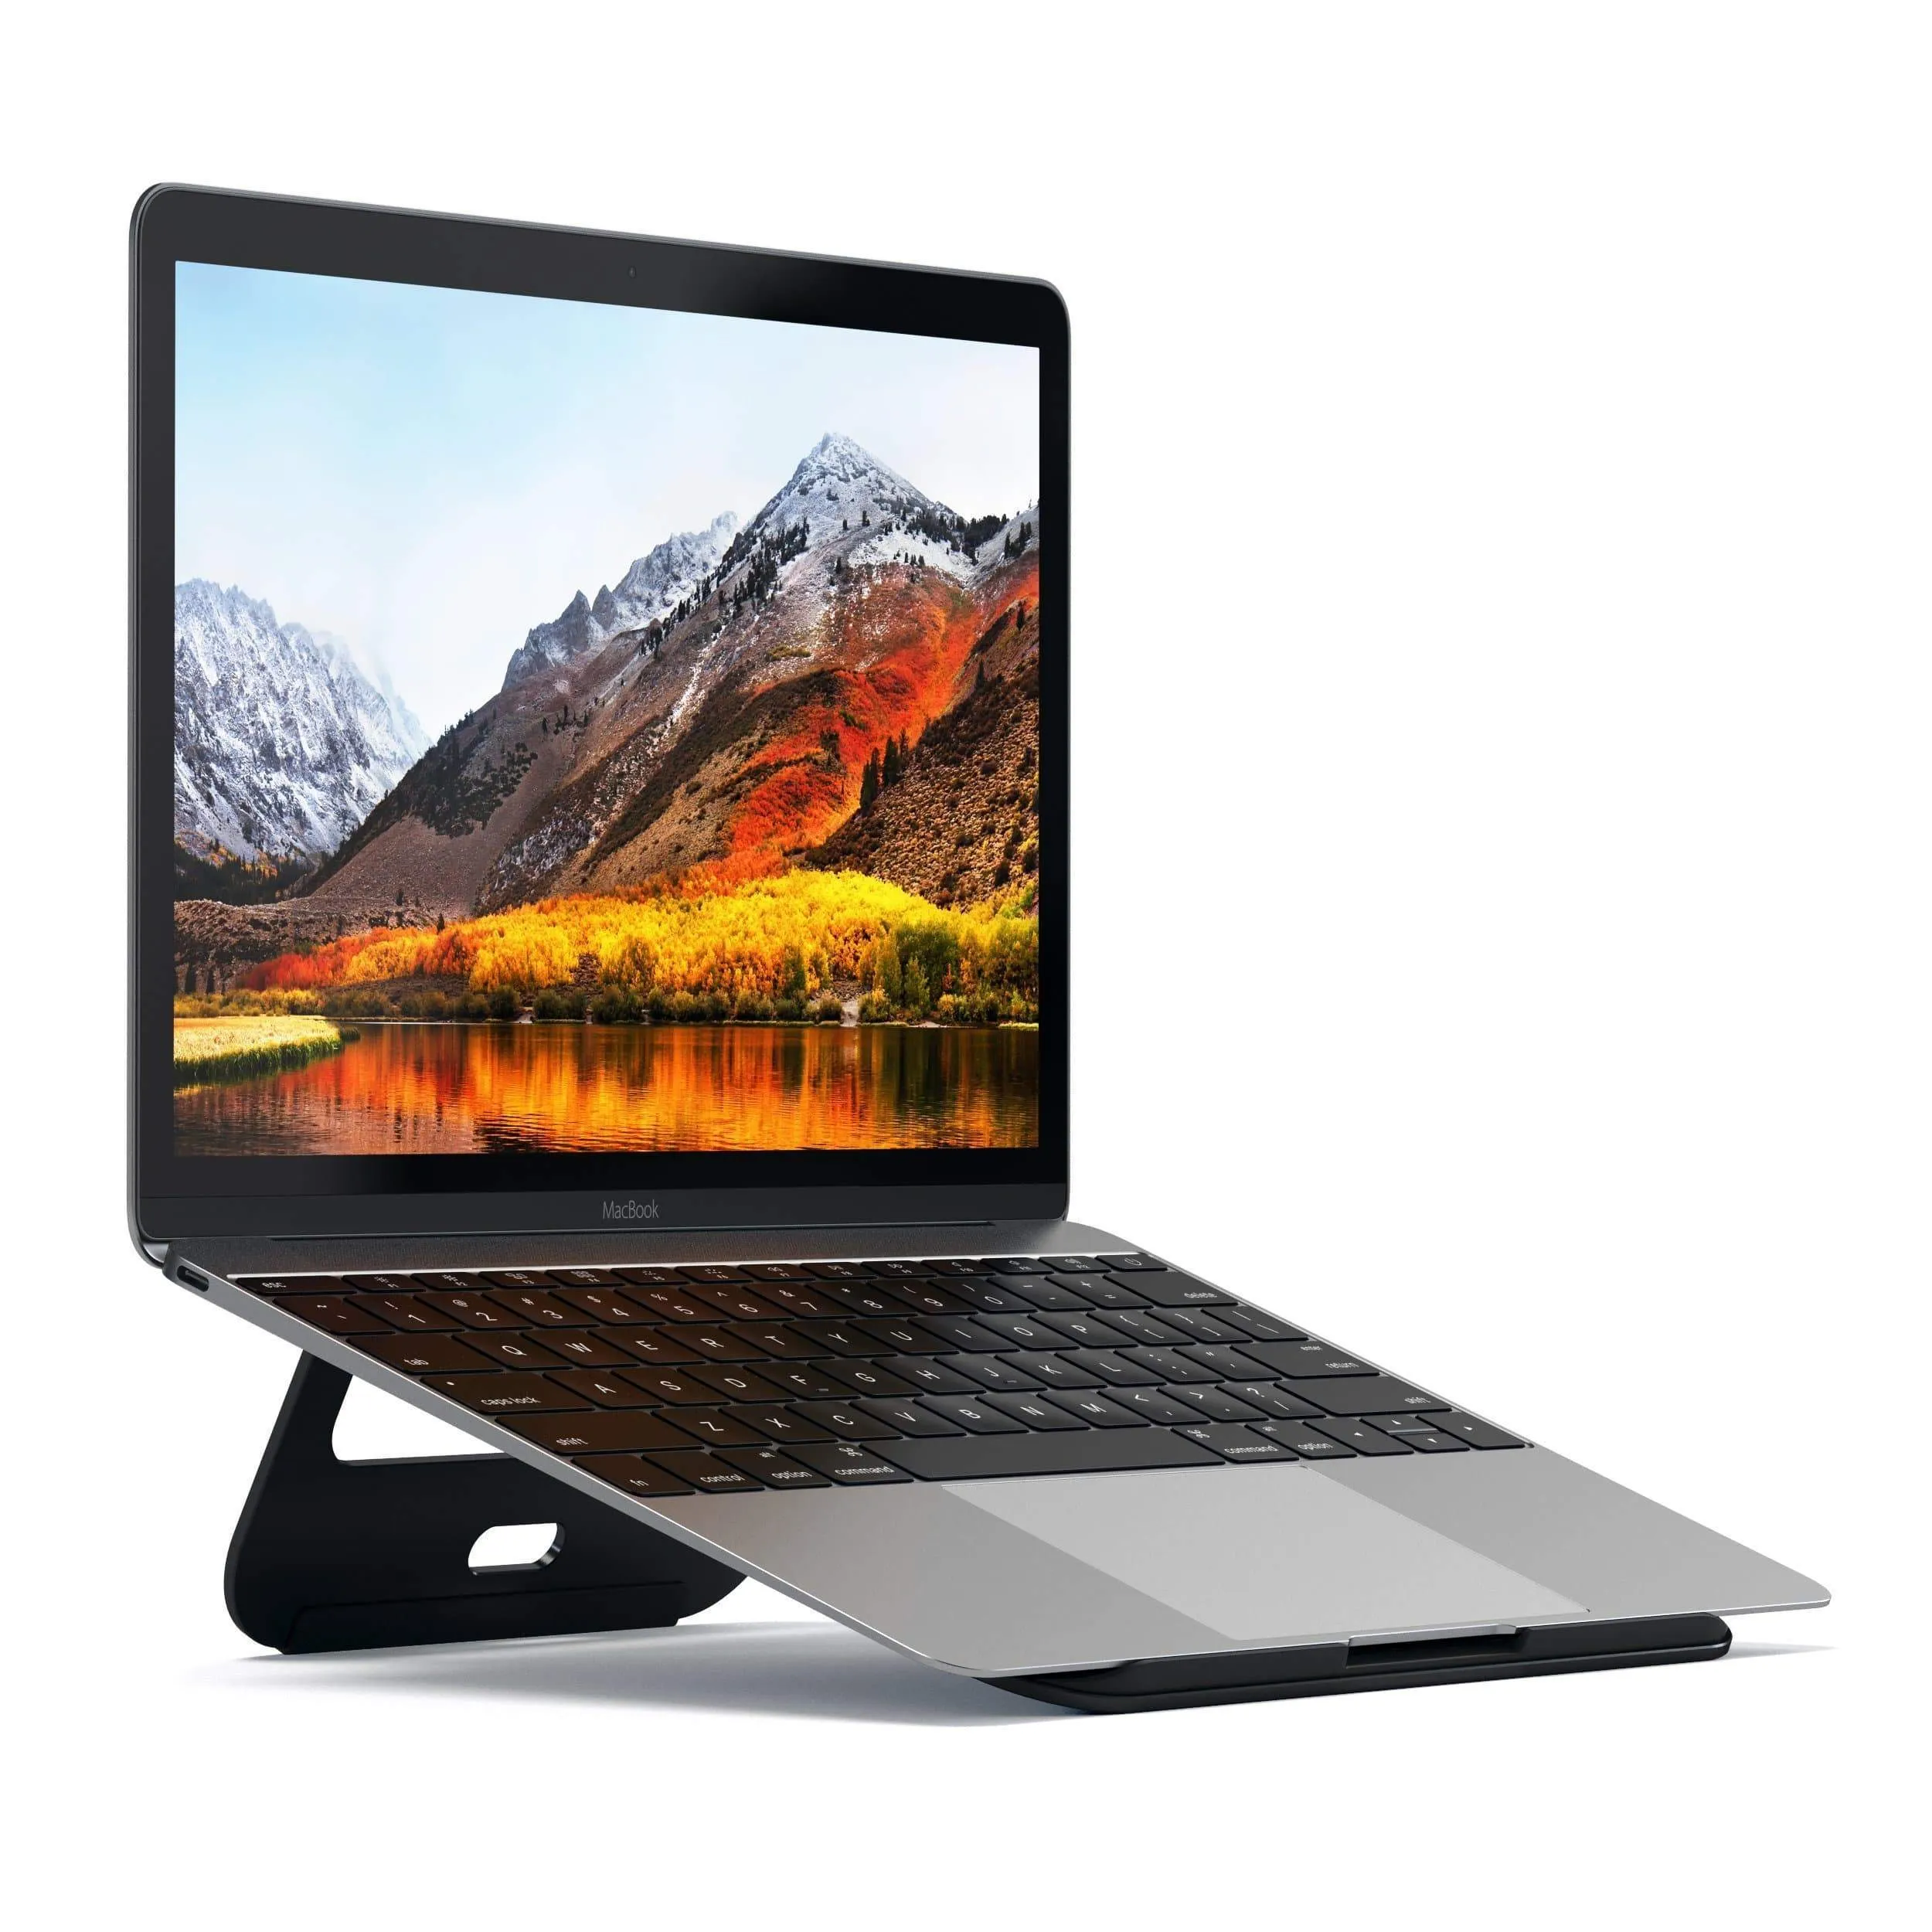 Подставка Satechi Aluminum Portable & Adjustable Laptop Stand для Apple MacBook. Цвет: серебристый